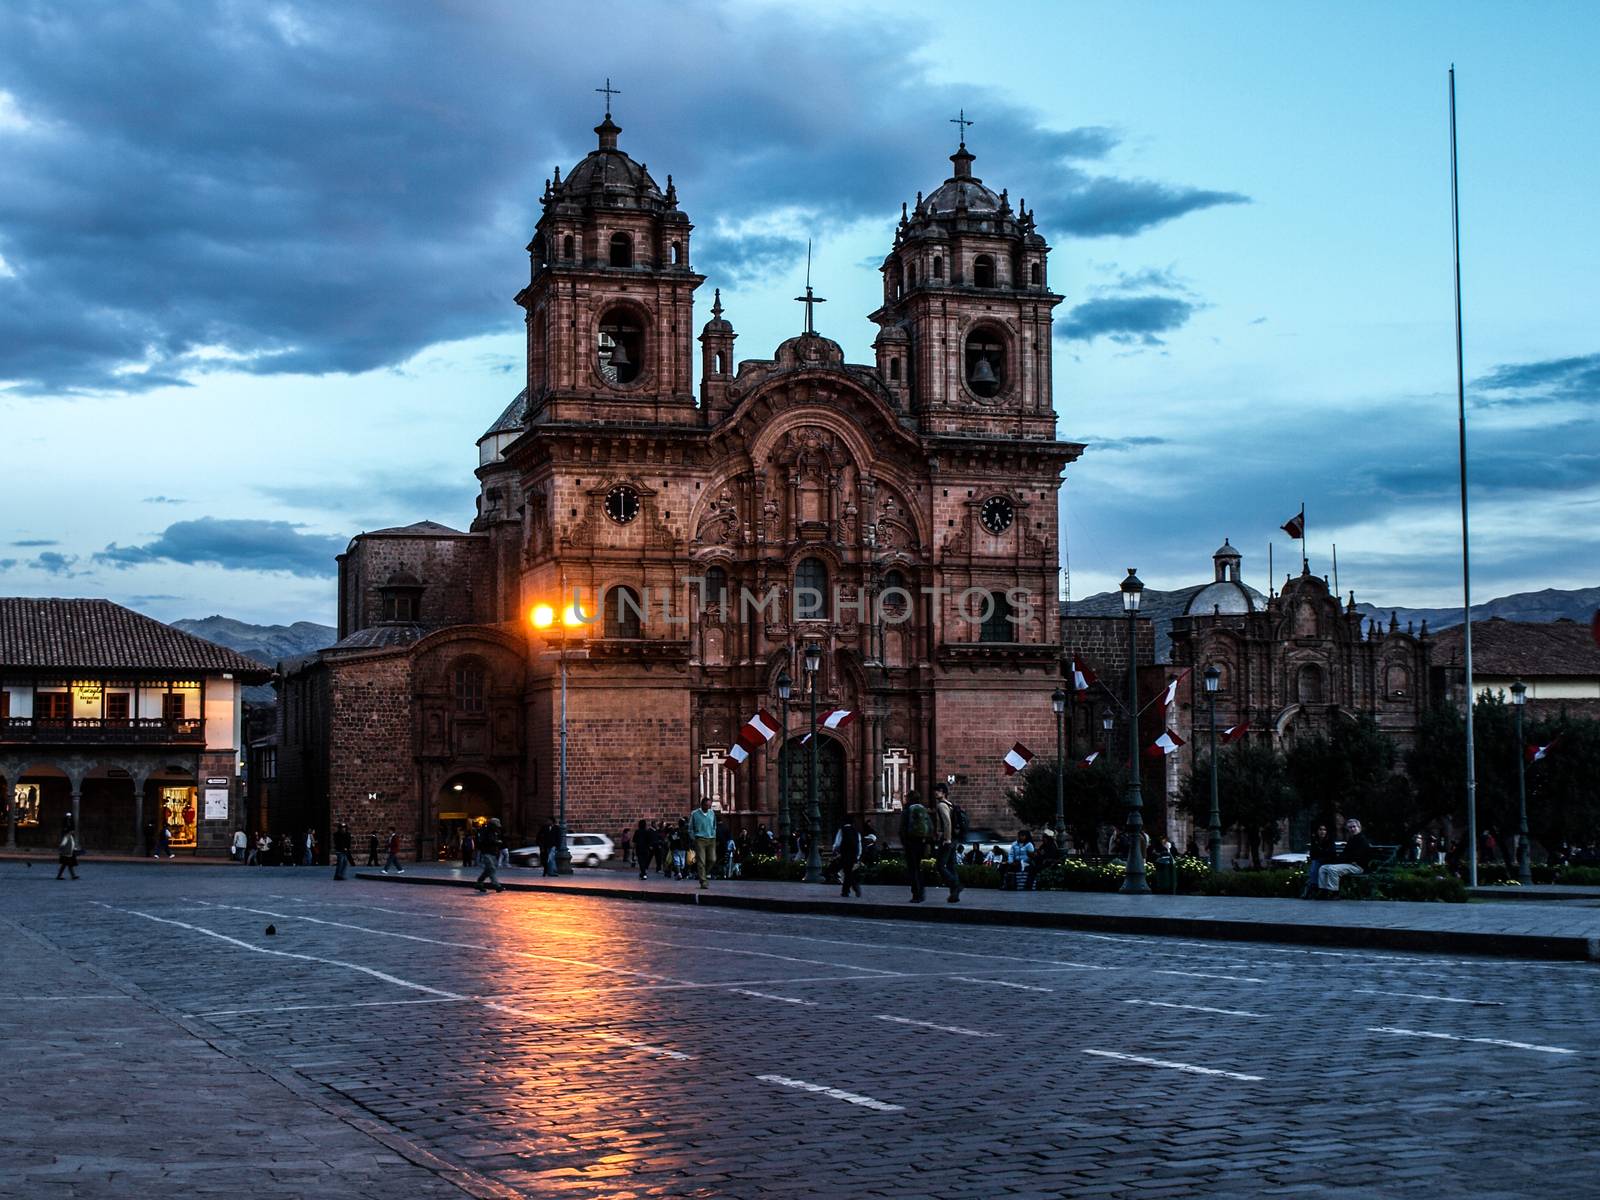 Curch at the Main Square (Plaza de Armas, Cusco, Peru)